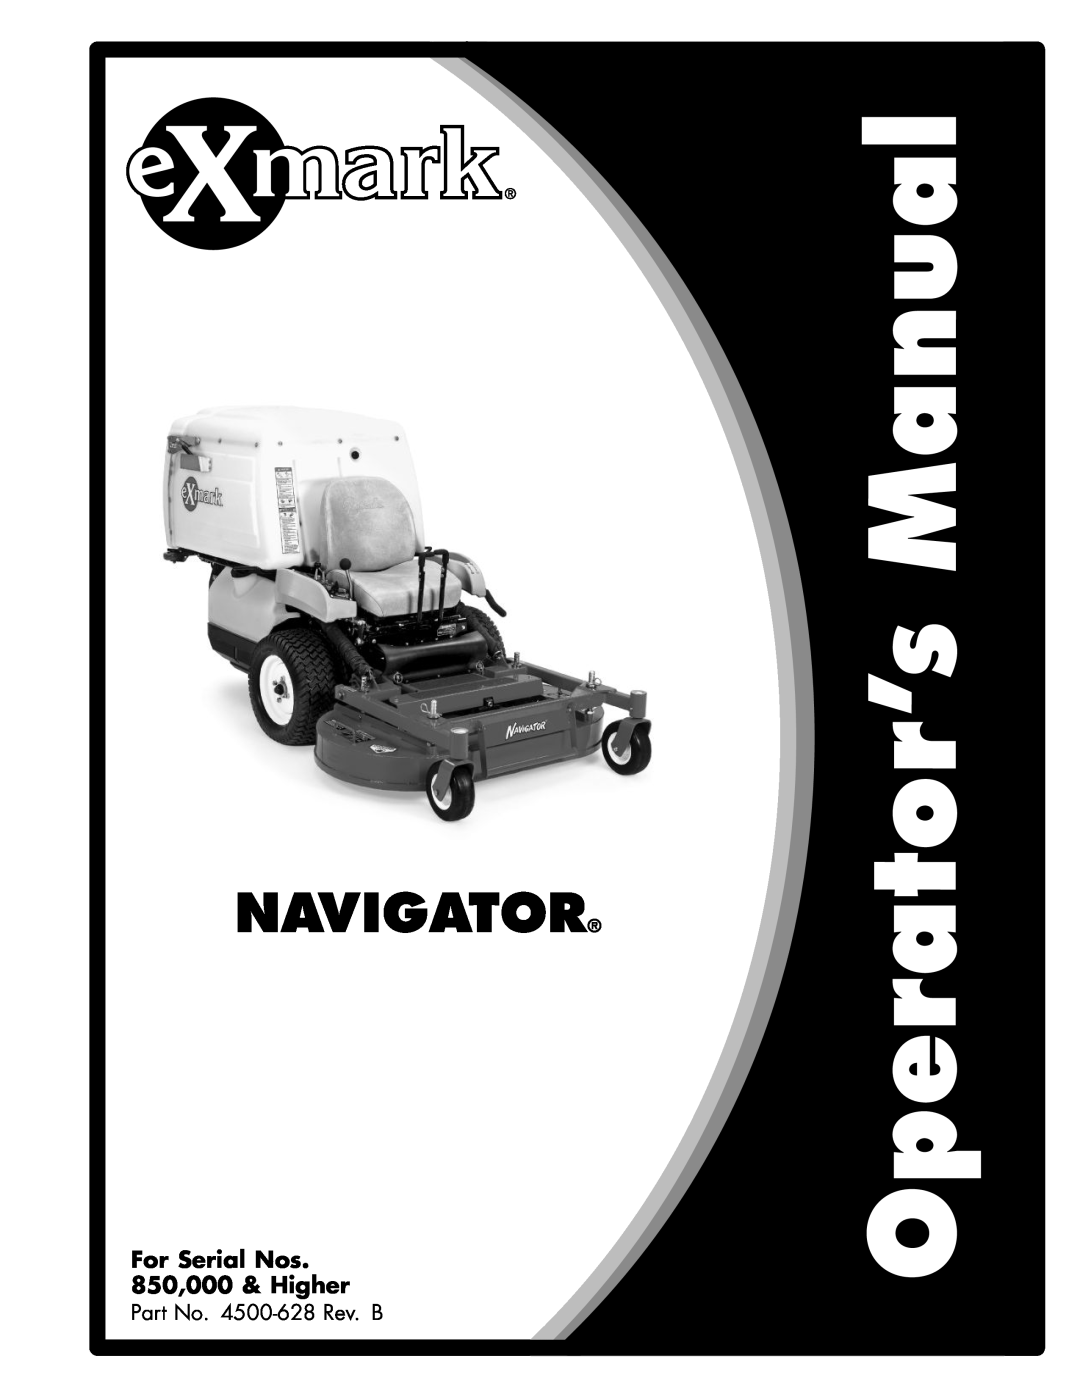 Exmark manual Lazer Z S-Series, For Serial Nos 312,000,000 & Higher, Lazer Z LZS Units, Part No. 4501-199Rev. A 